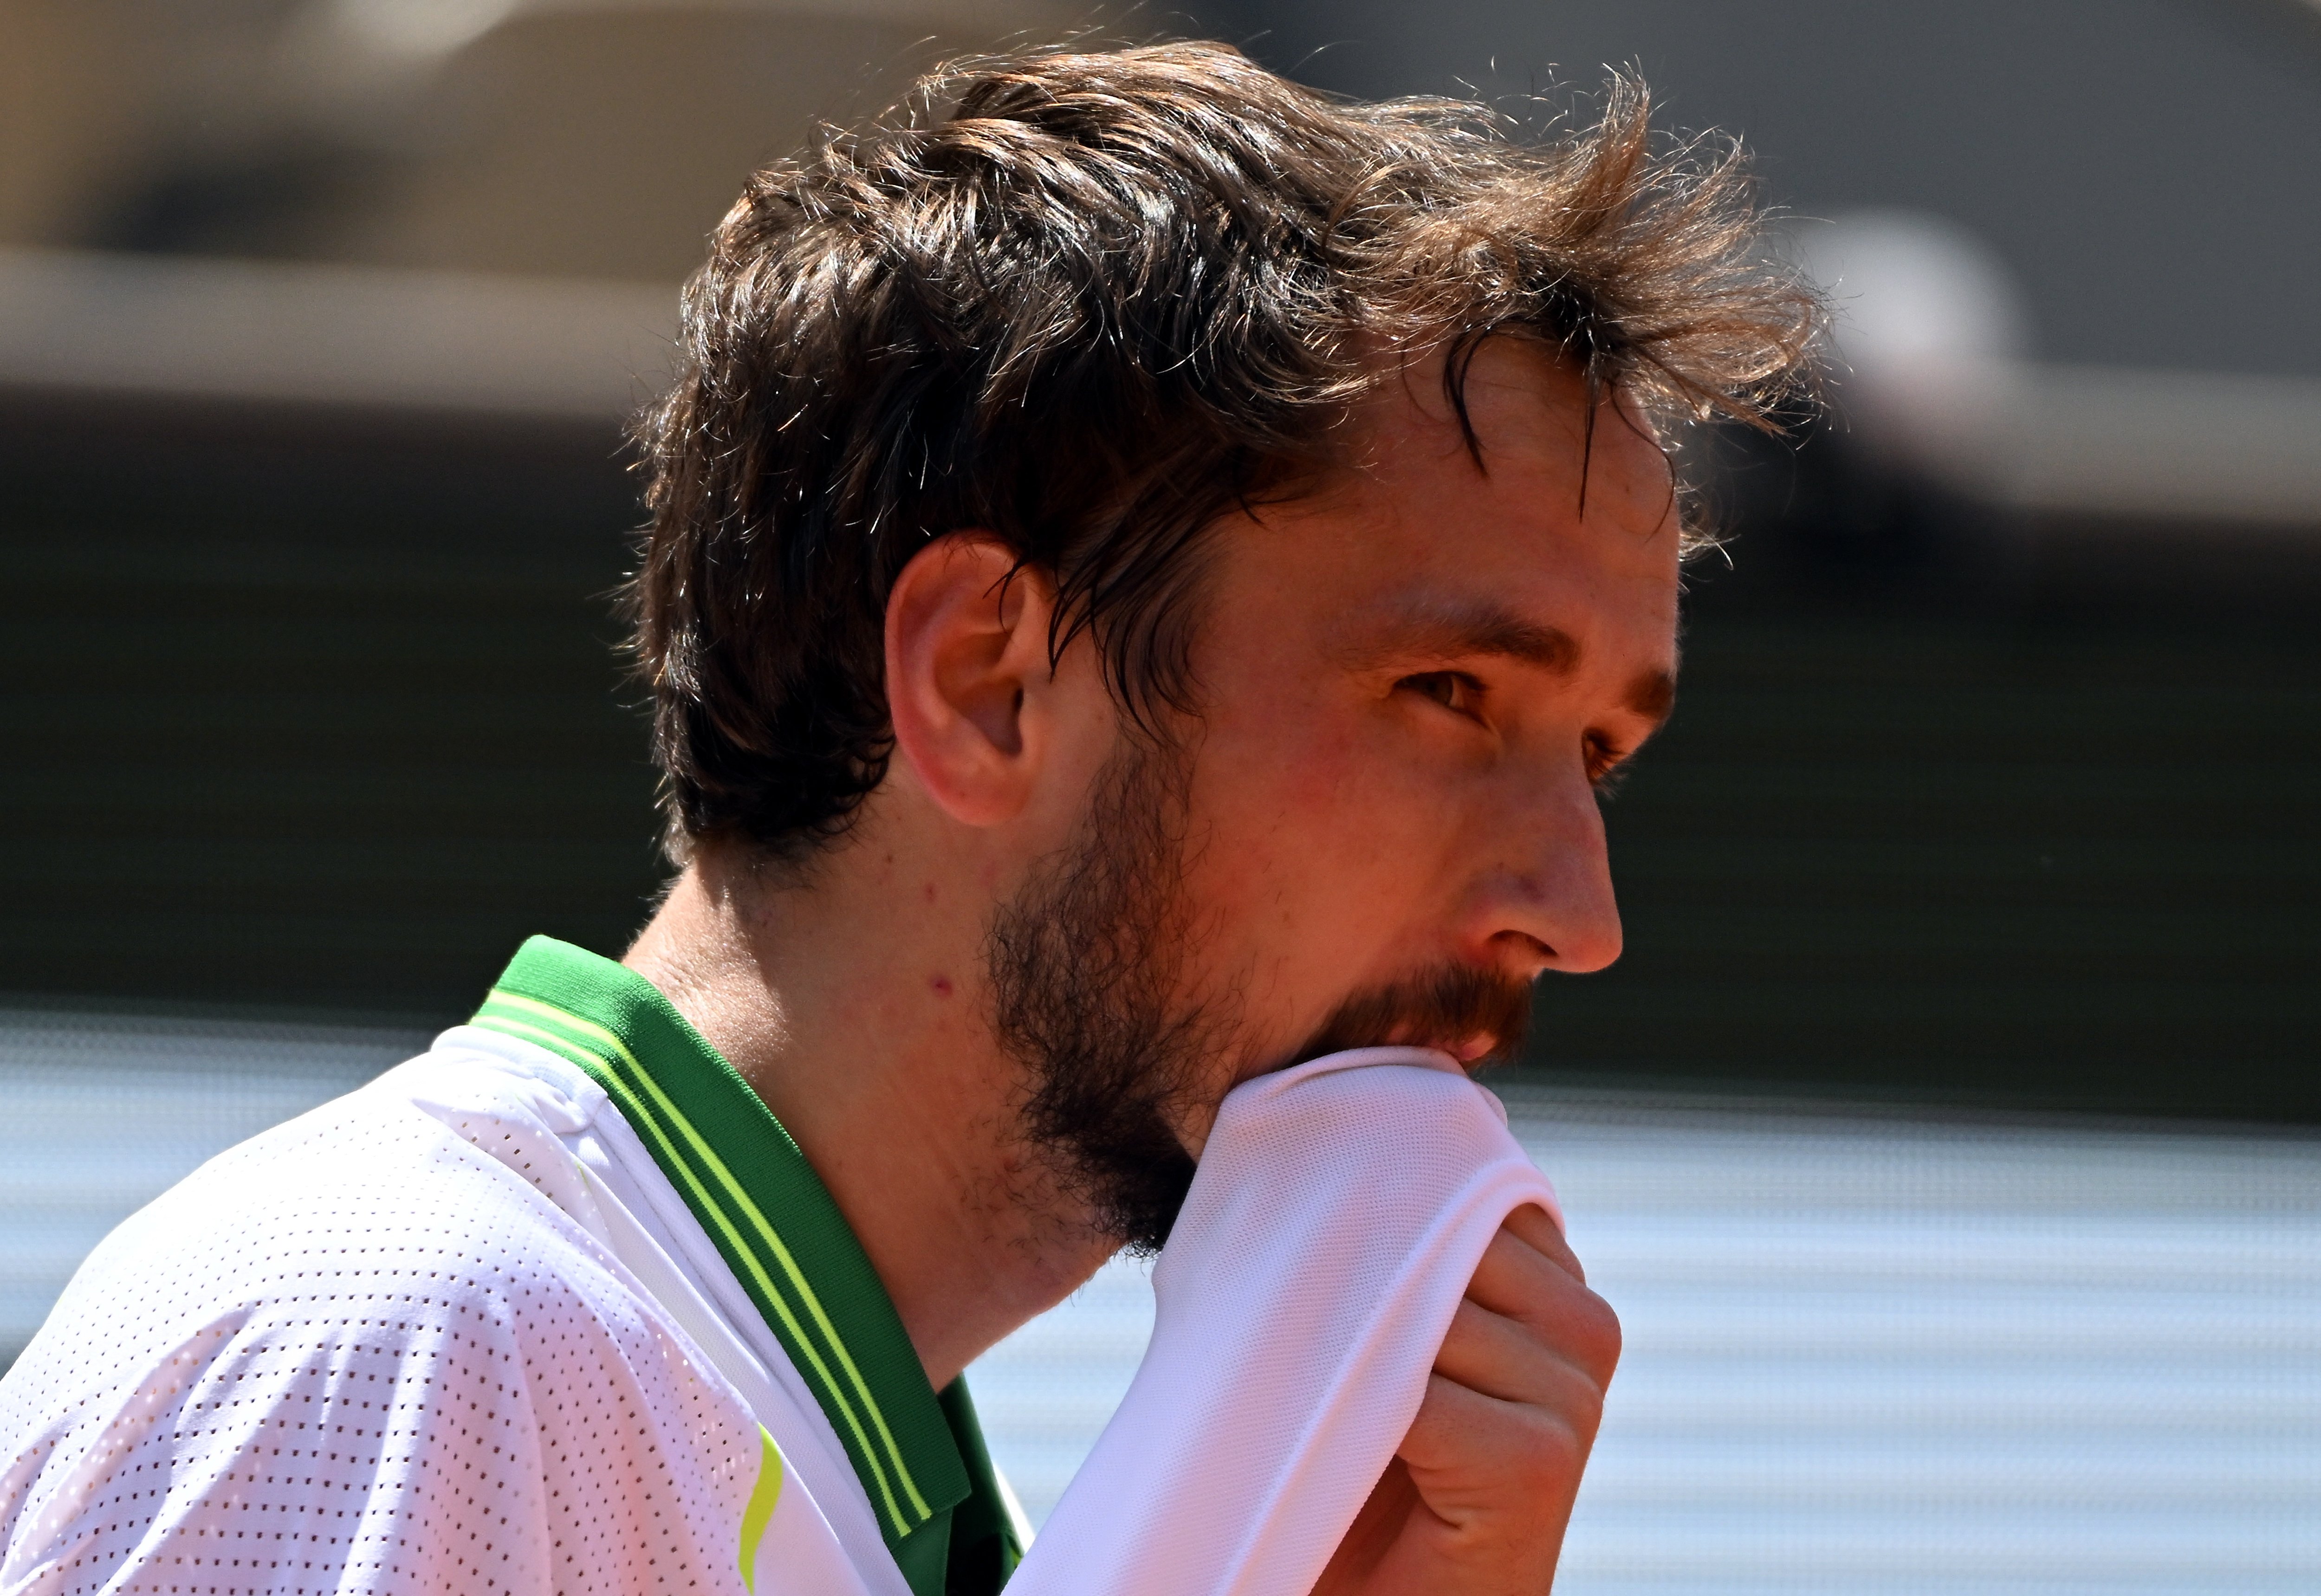 Sorpresa majúscula a Roland Garros: Medvedev cau contra el 172 del món i aplana el camí a Alcaraz